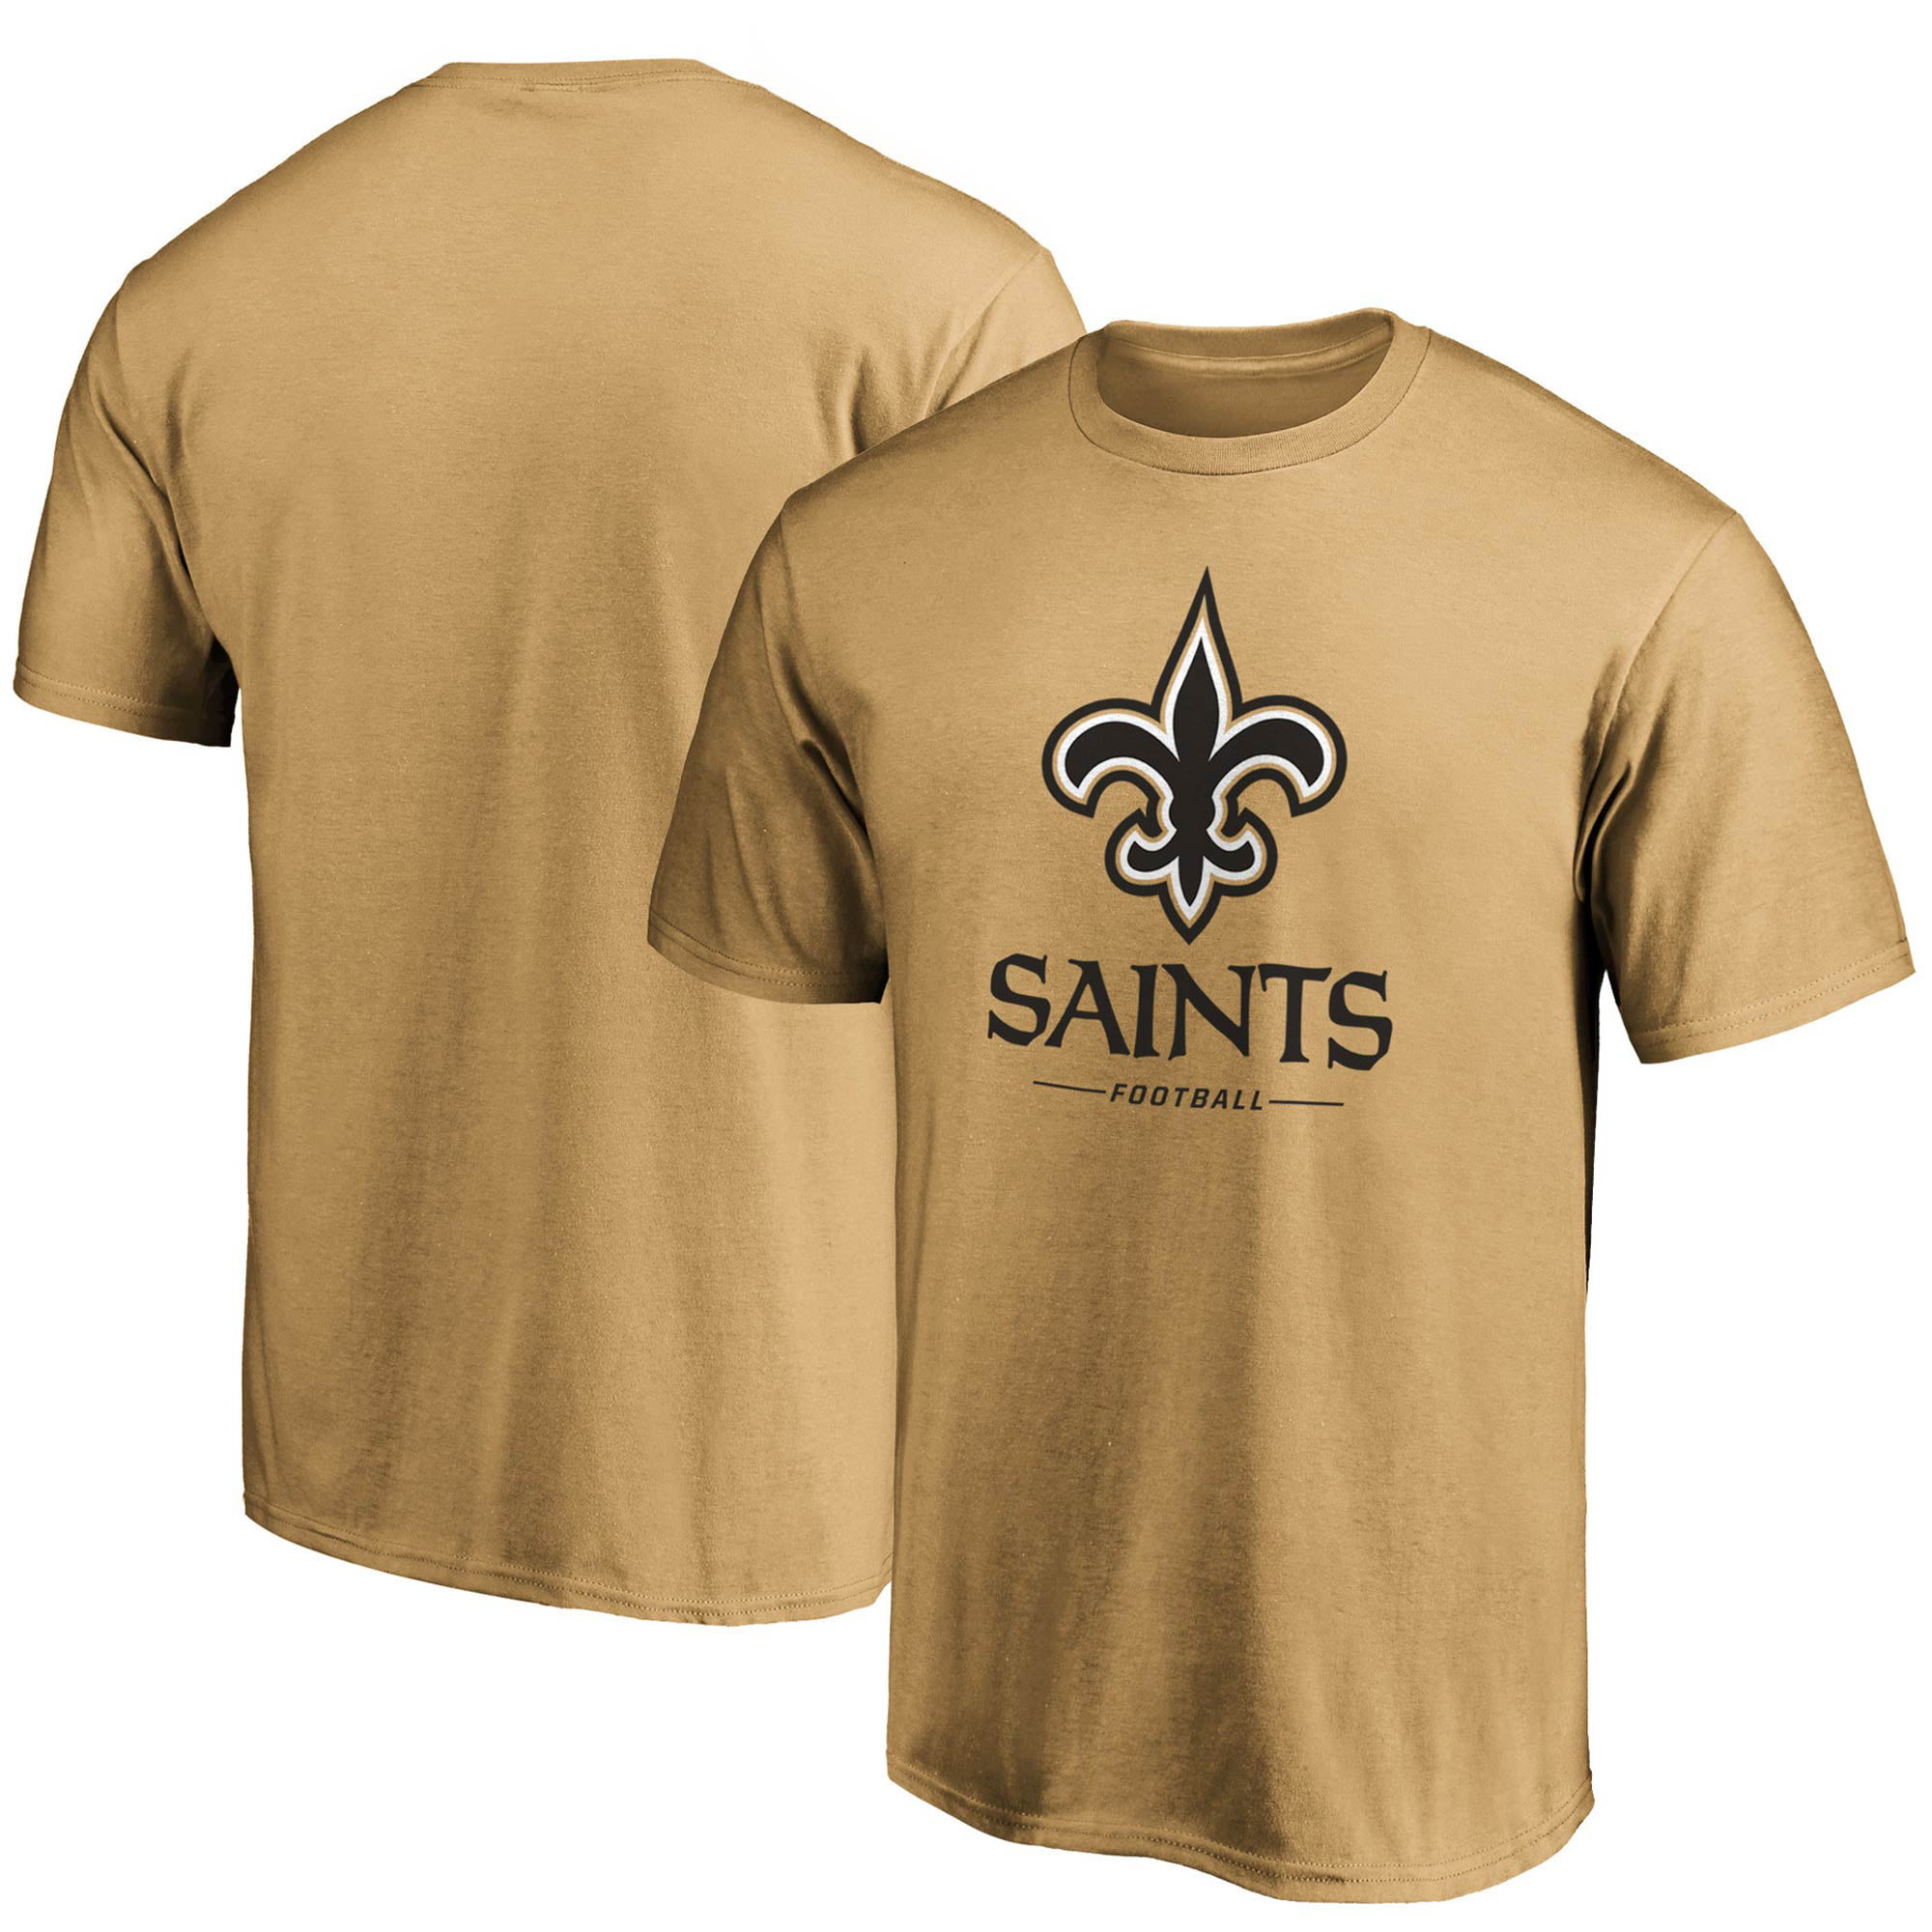 the saints t shirt